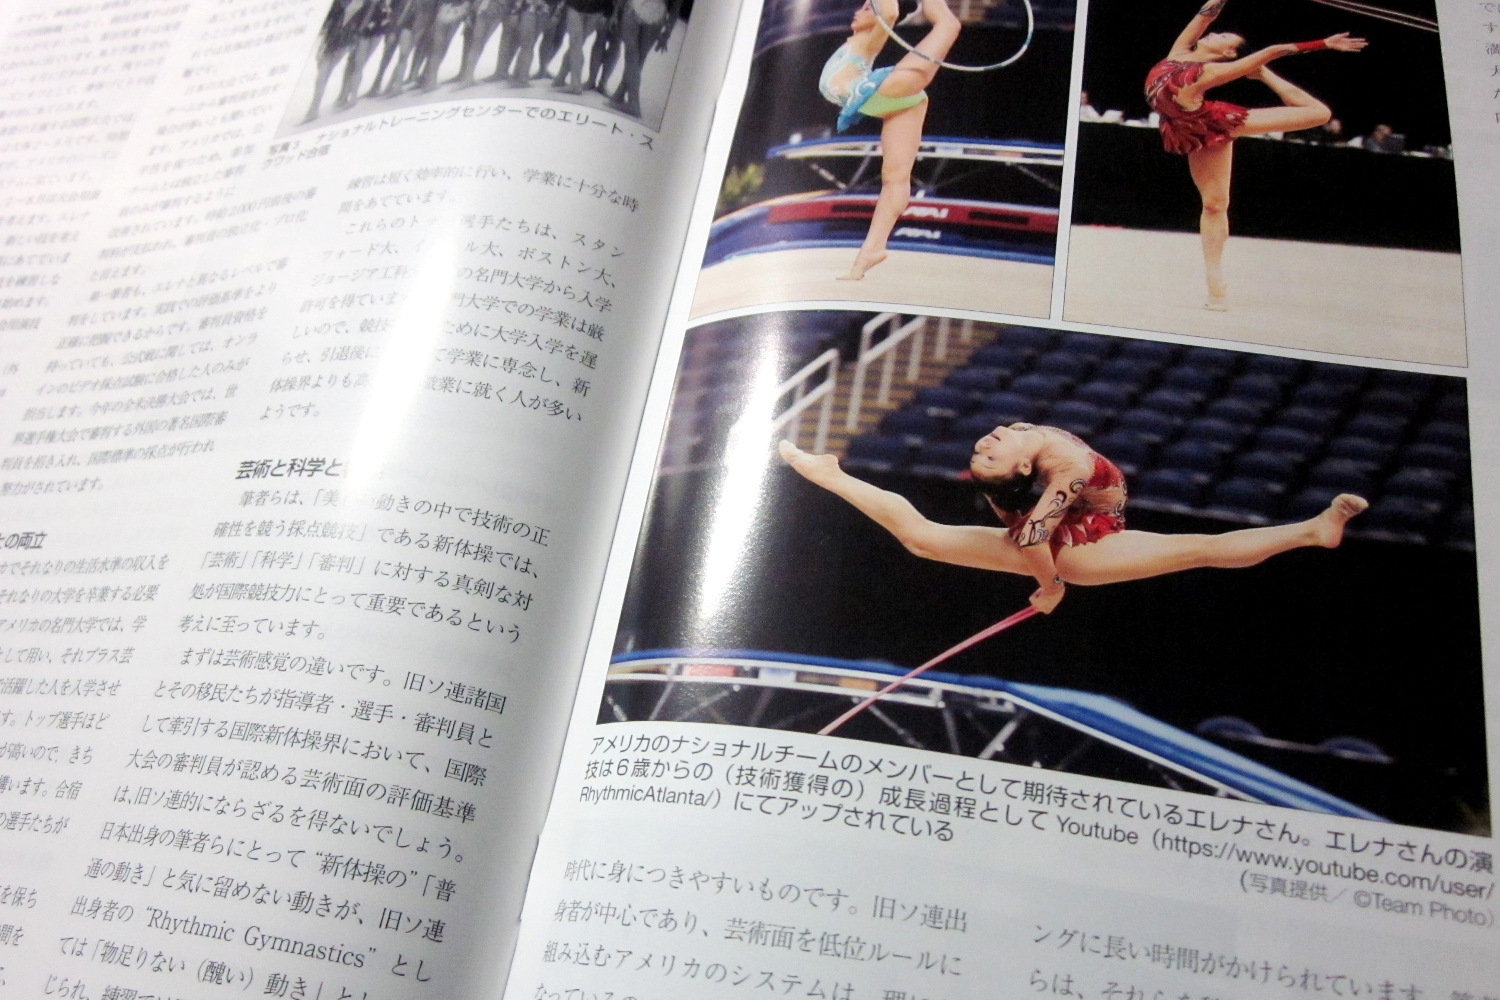 月刊スポーツメディスン174号「アメリカ新体操界の躍進を支えるシステム」24-25頁